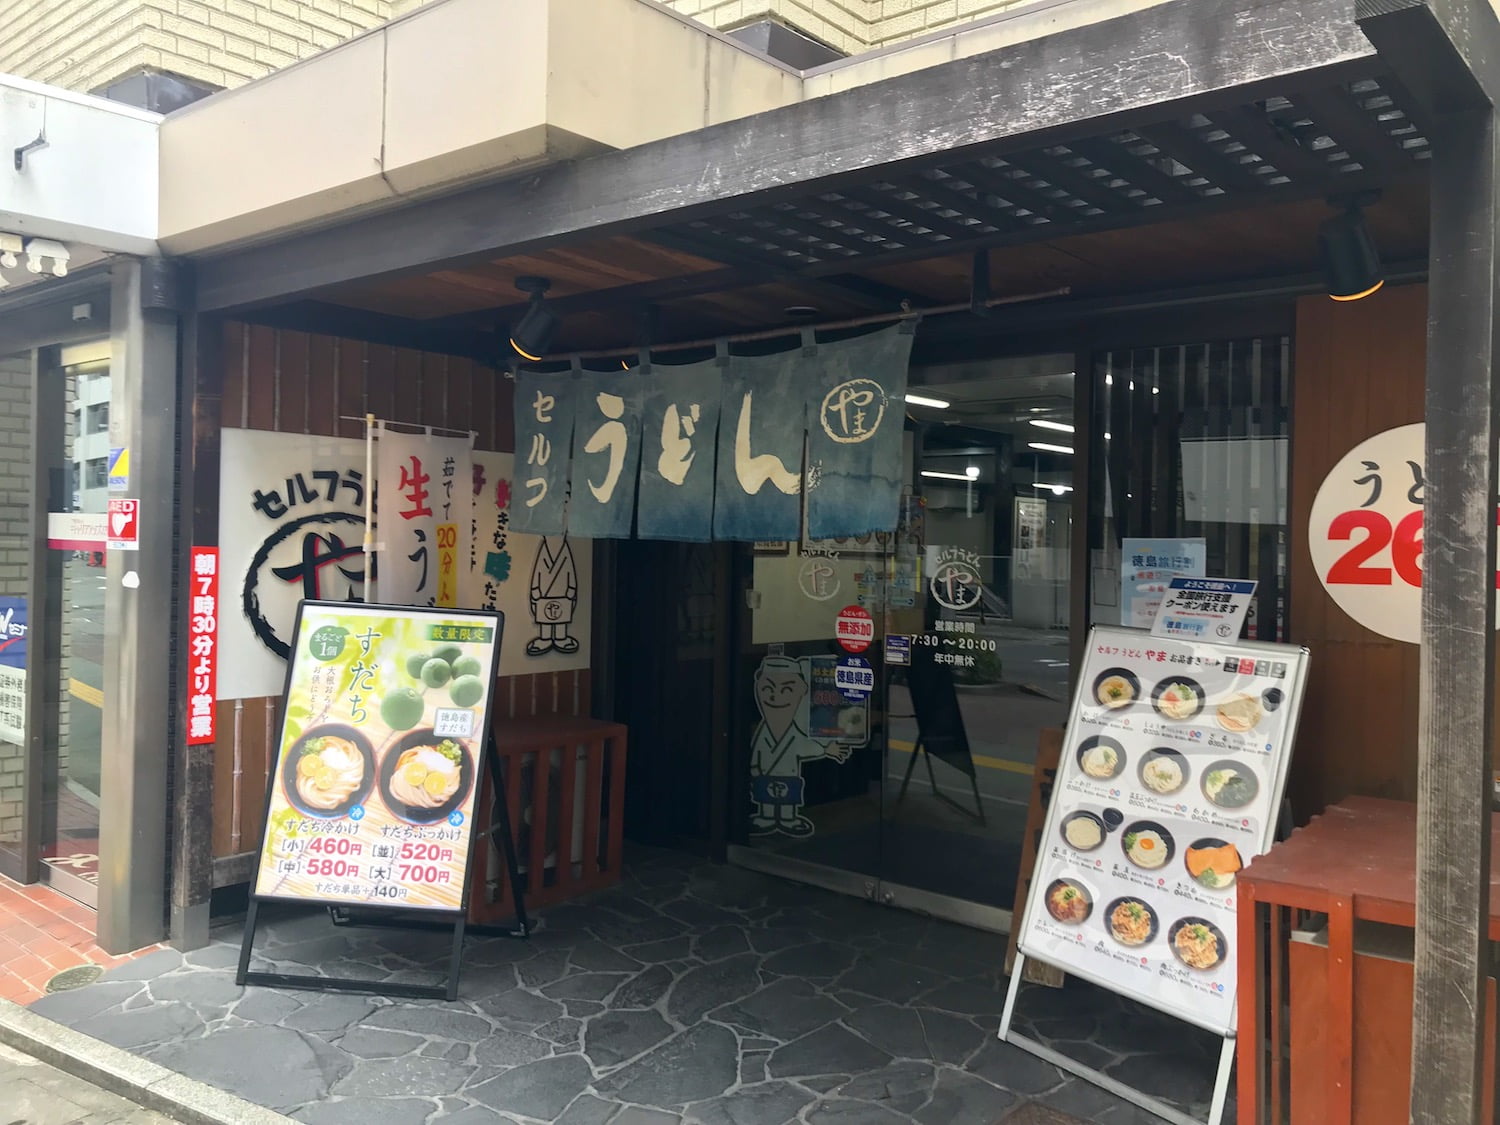 Udon restaurant near Tokushima station